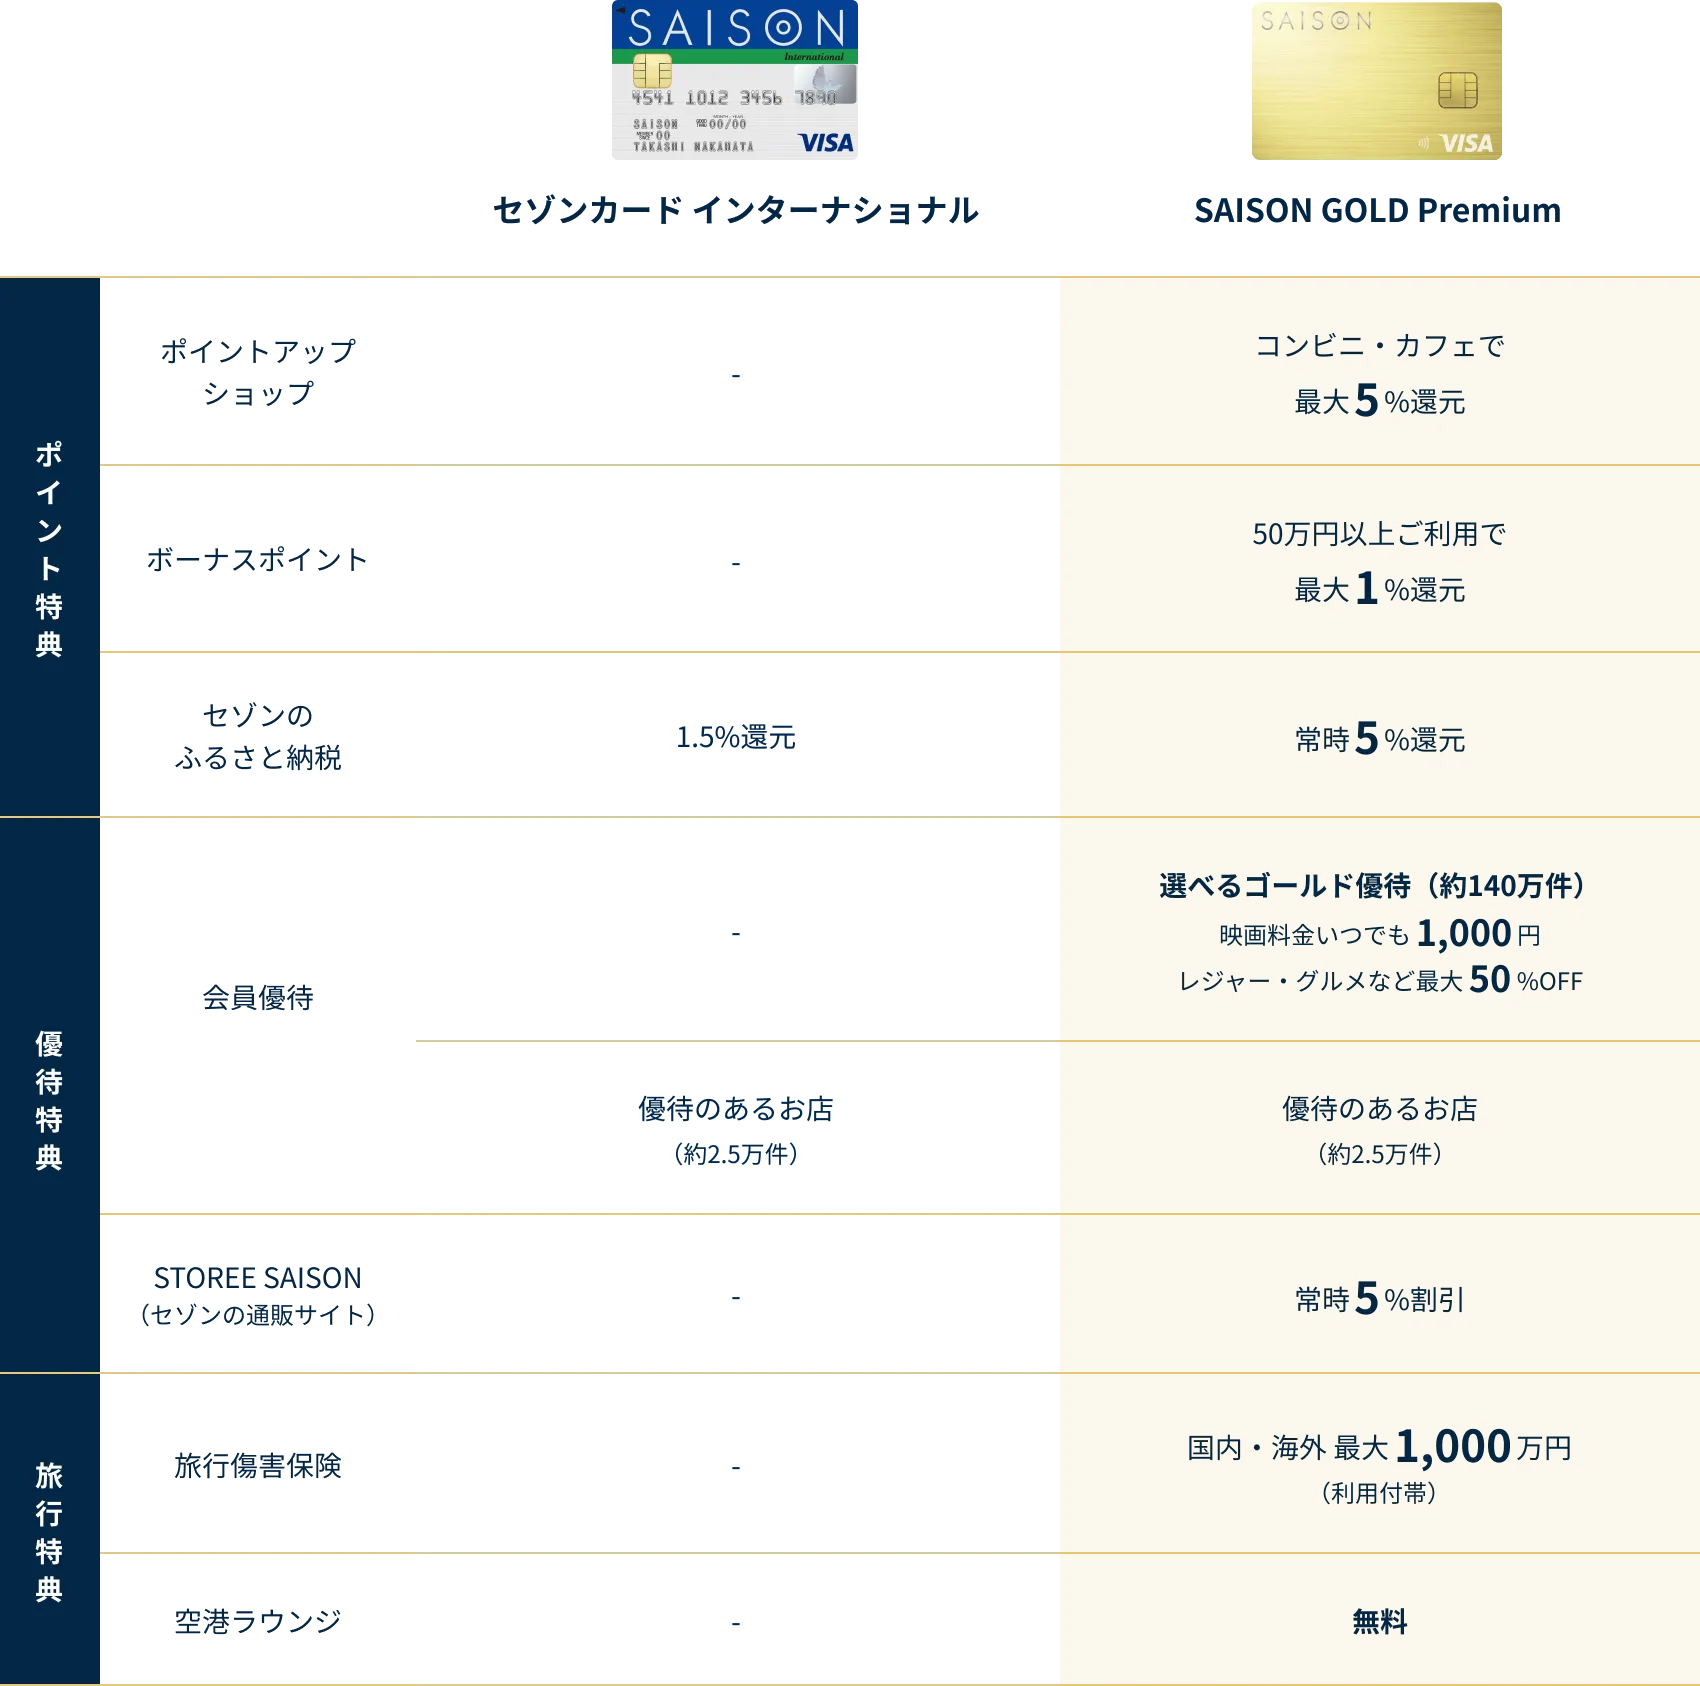 セゾンカードインターナショナルとSAISON GOLD Premium の比較表画像